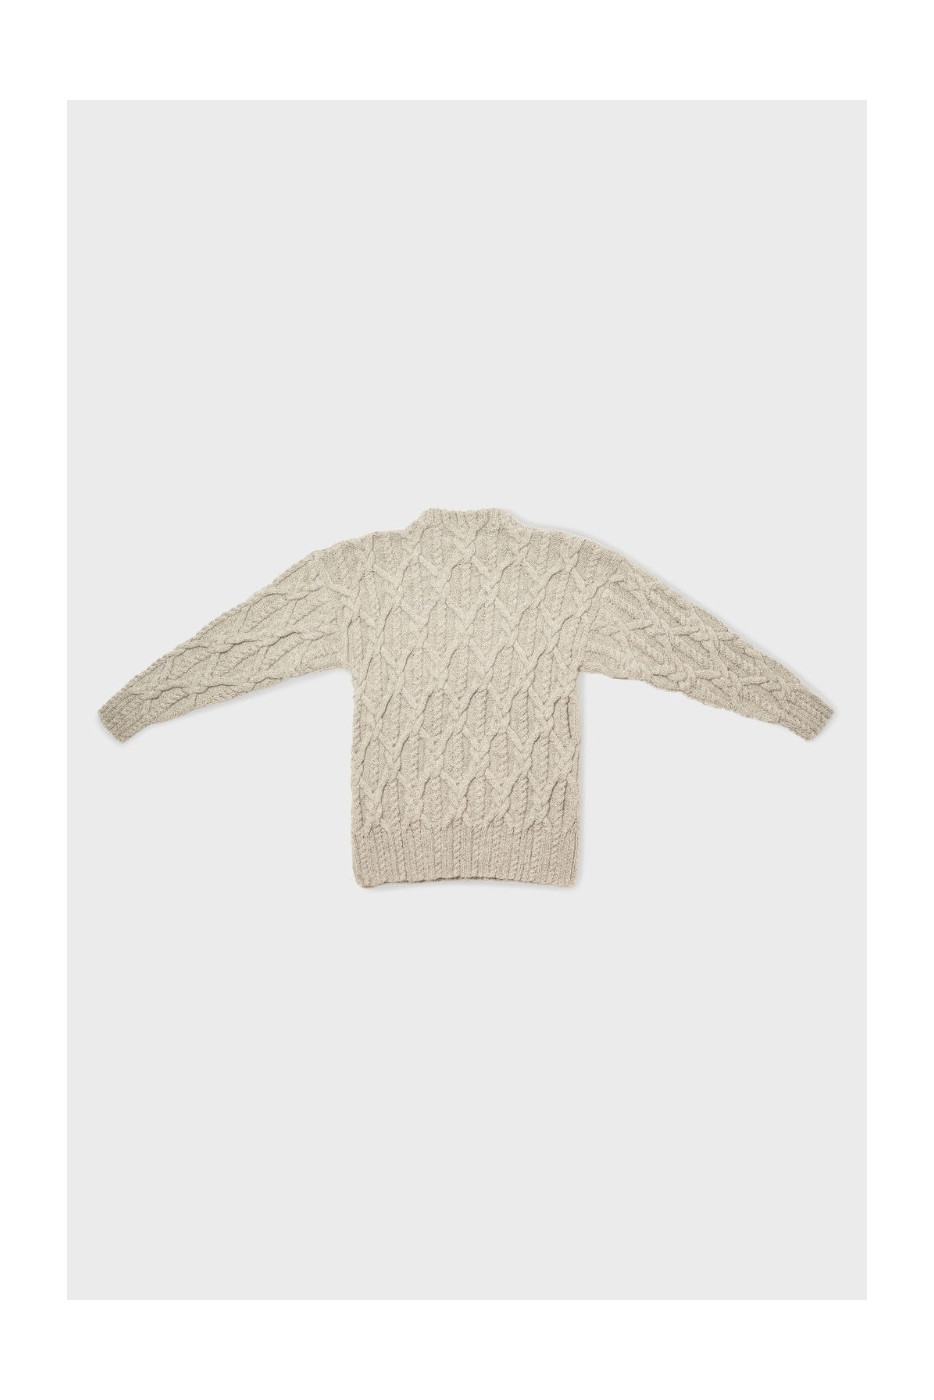 Wild Cable Sweater | Womens Knitwear NZ | Womens Knitwear| BONZ